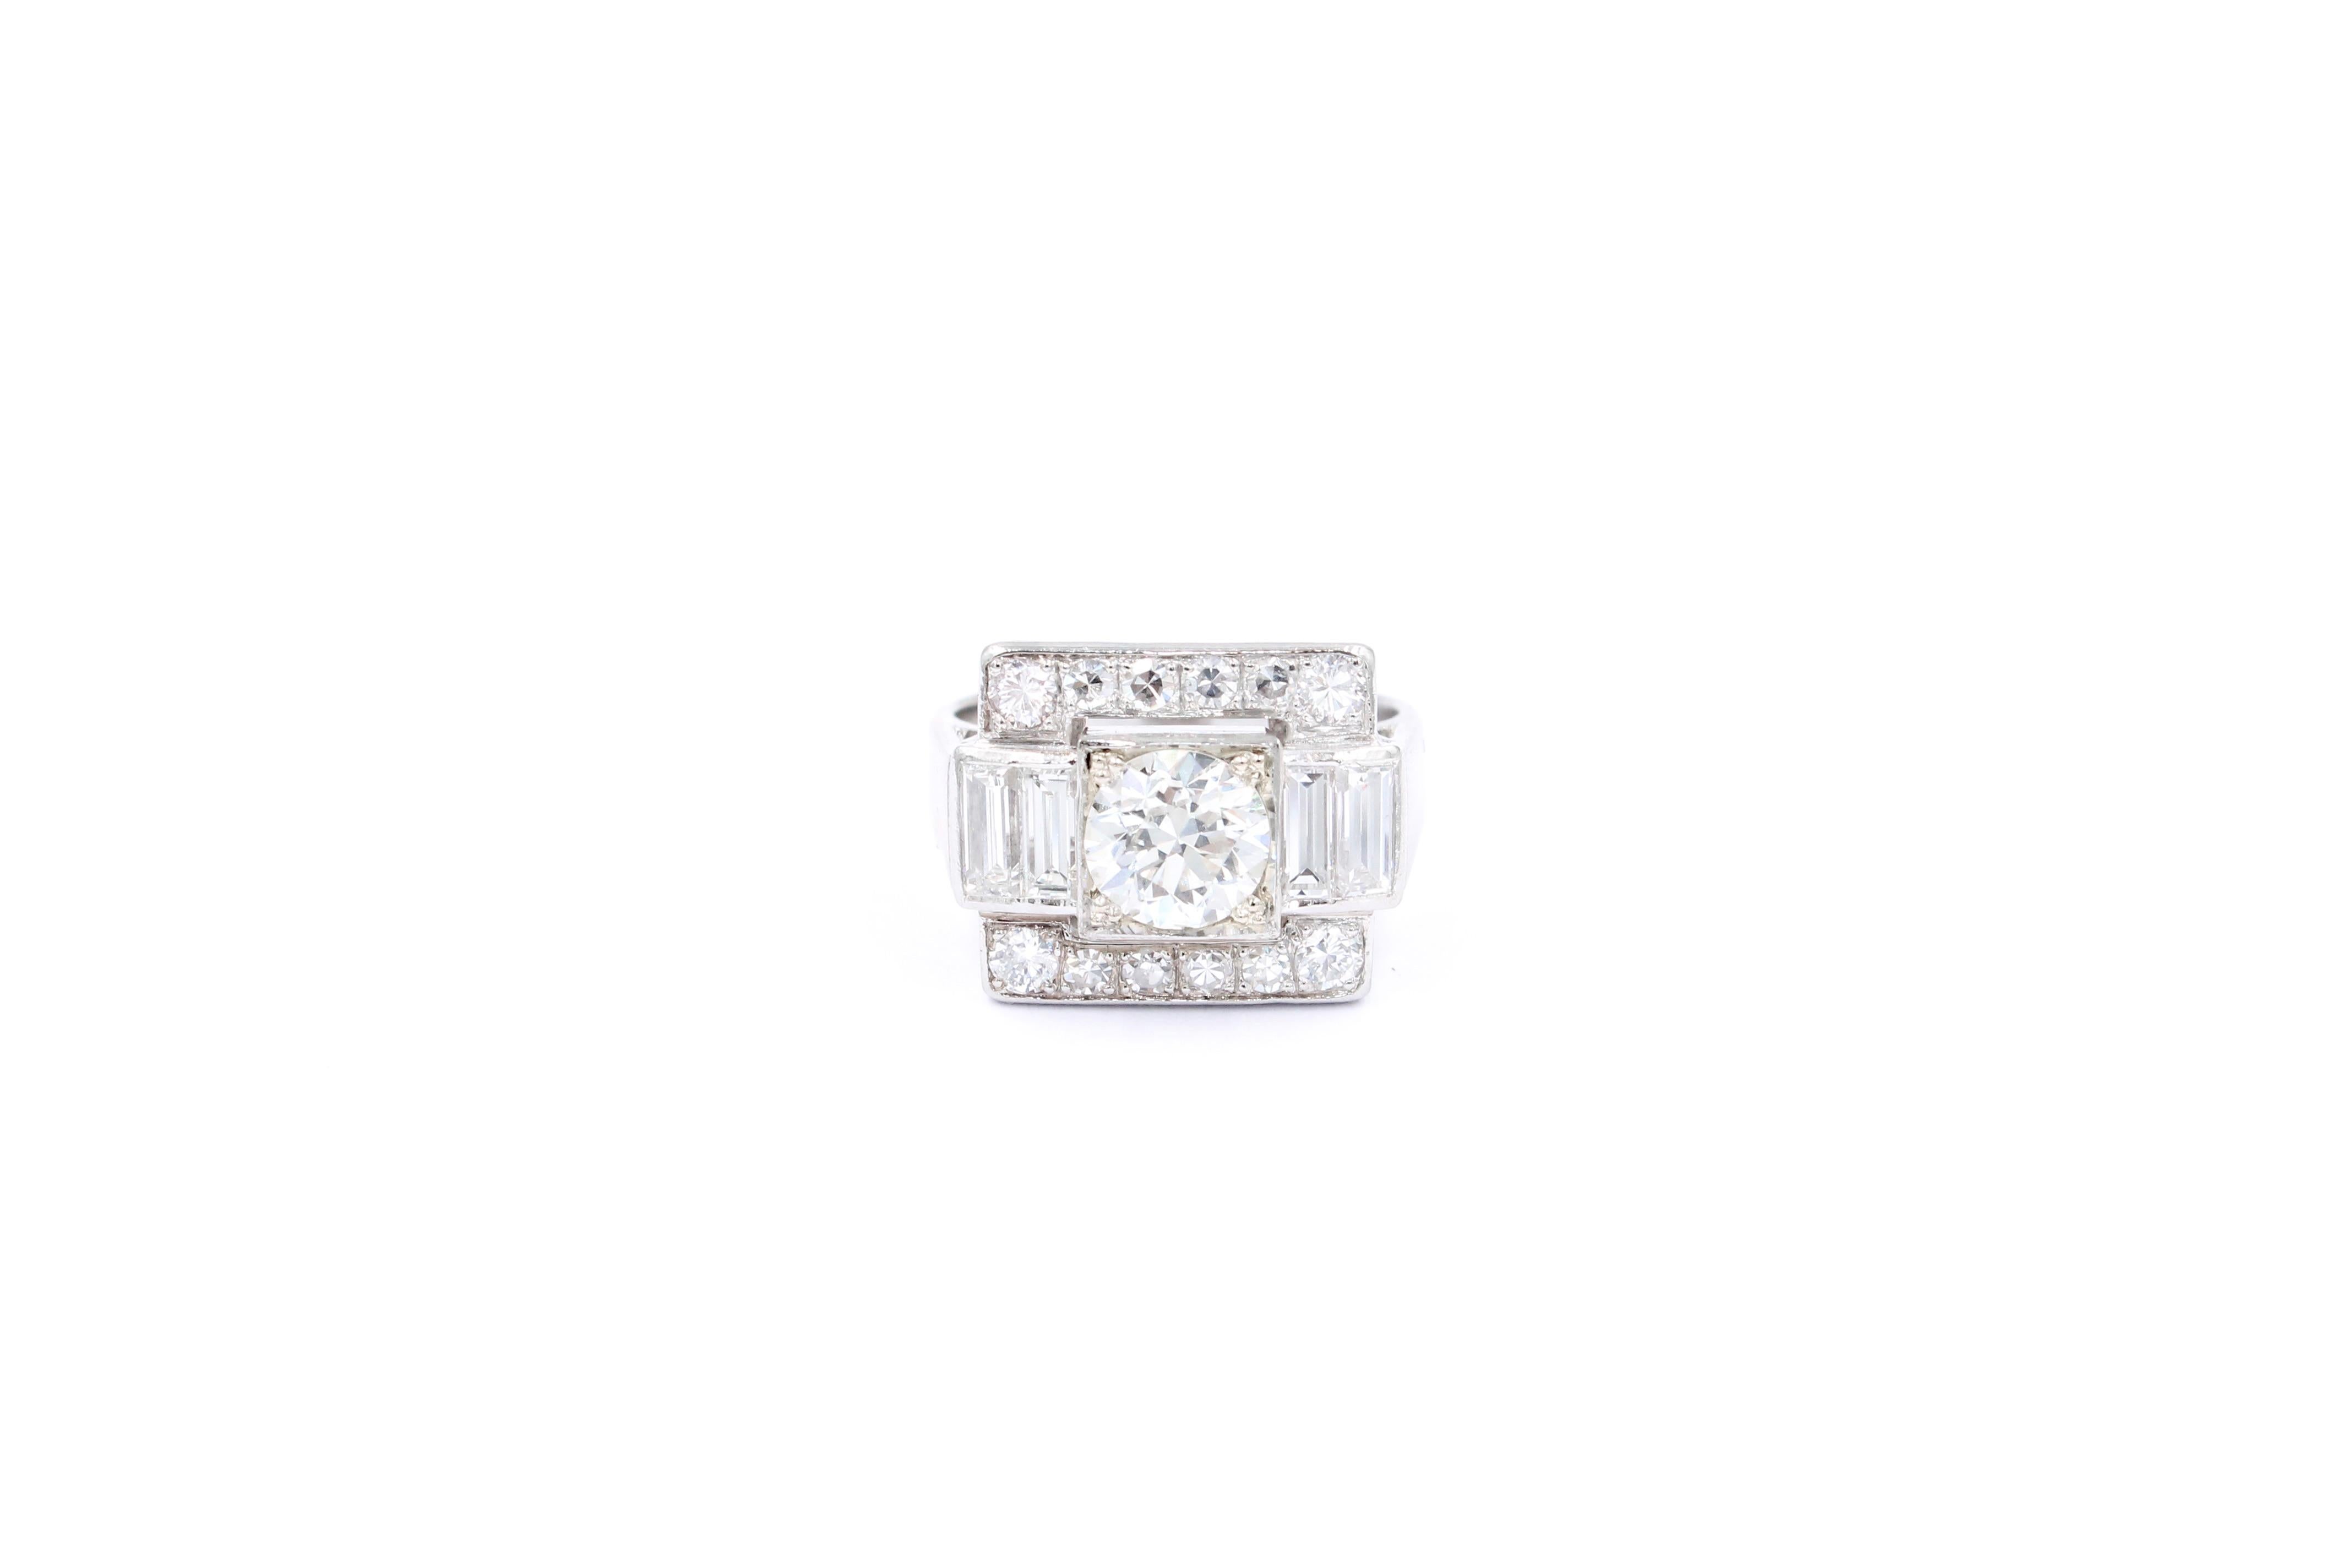 Einzigartiger quadratischer Vintage Ring um 1950 in perfektem Zustand. 

Der Ring ist aus 18-karätigem Weißgold gefertigt. 

Der Ring ist mit einer Mitte modernen curt Diamant von 1,08 Karat (geschätzte H Farbe - Vs Klarheit), 4 Baguette Form